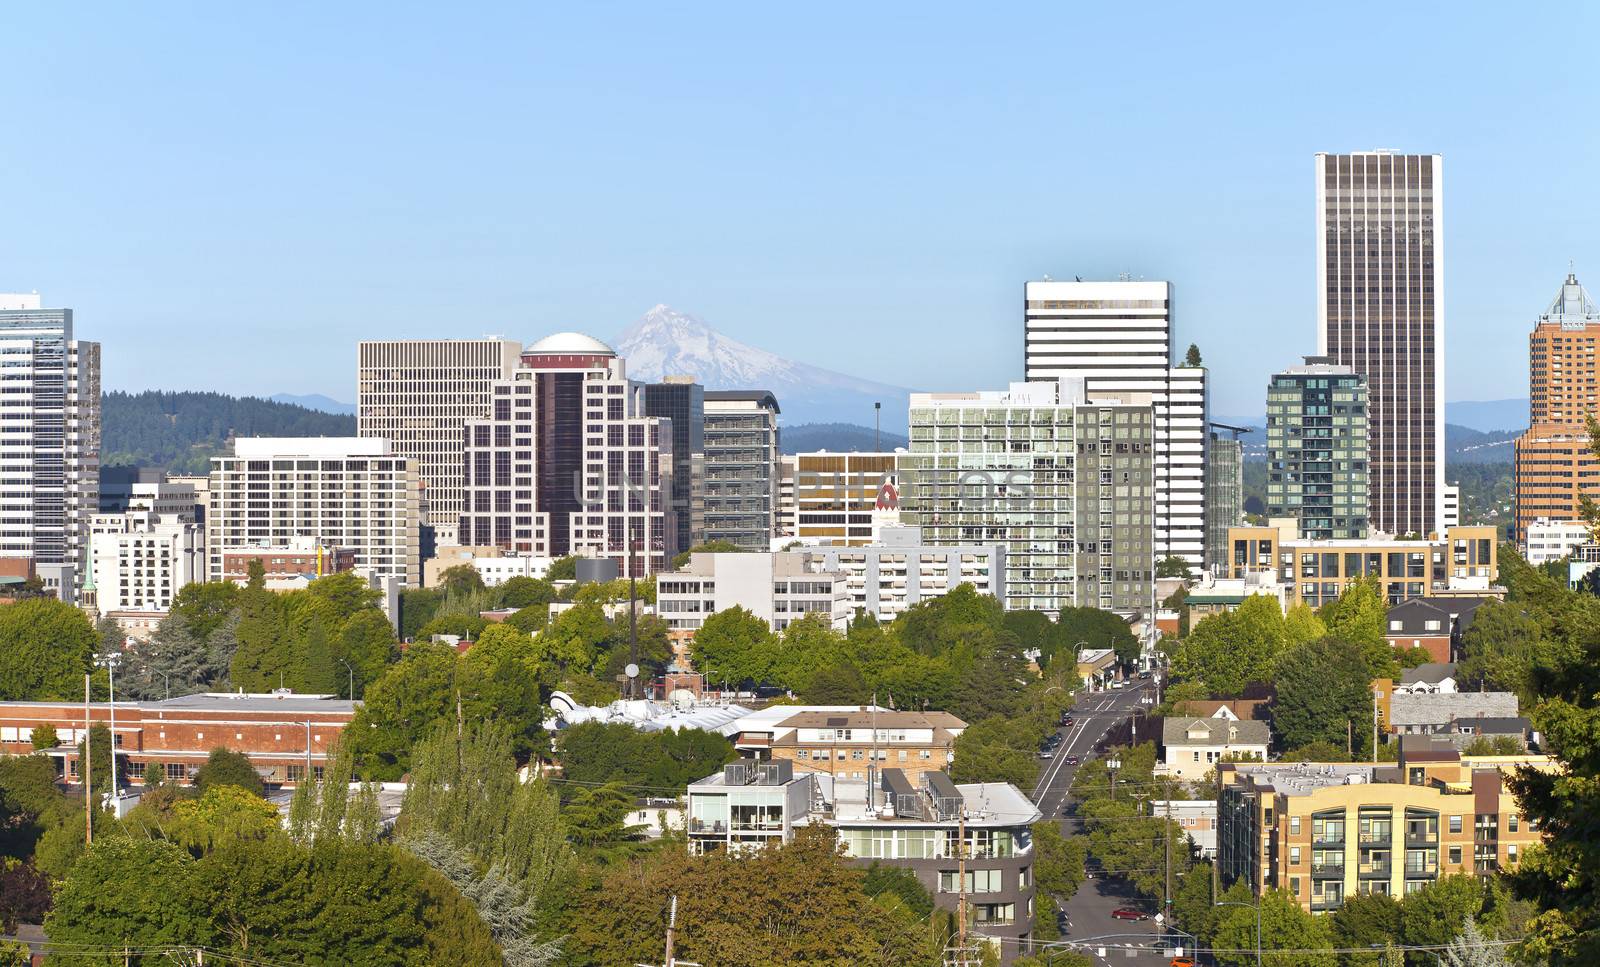 Portland Oregon skyline with Mt. Hood. by Rigucci